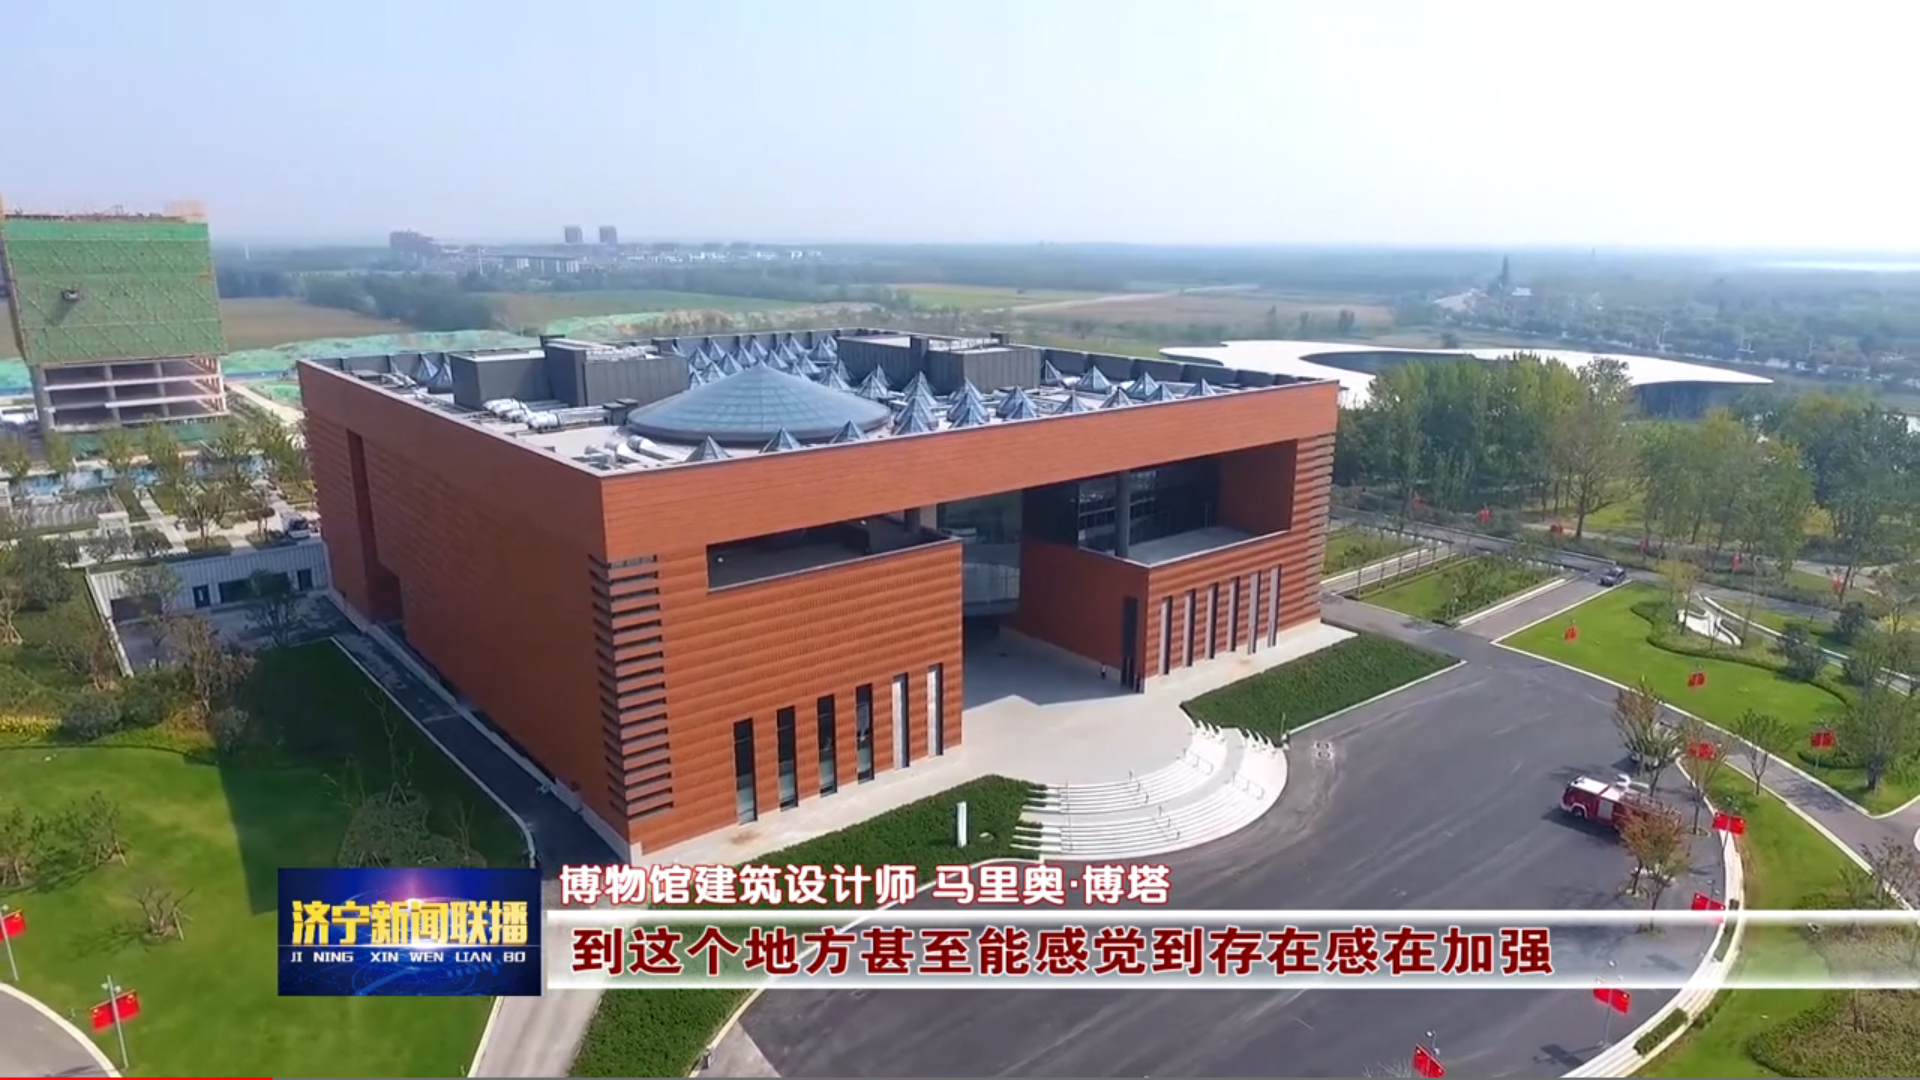 济宁市博物馆新馆正式开馆 16万馆藏文物再现历史